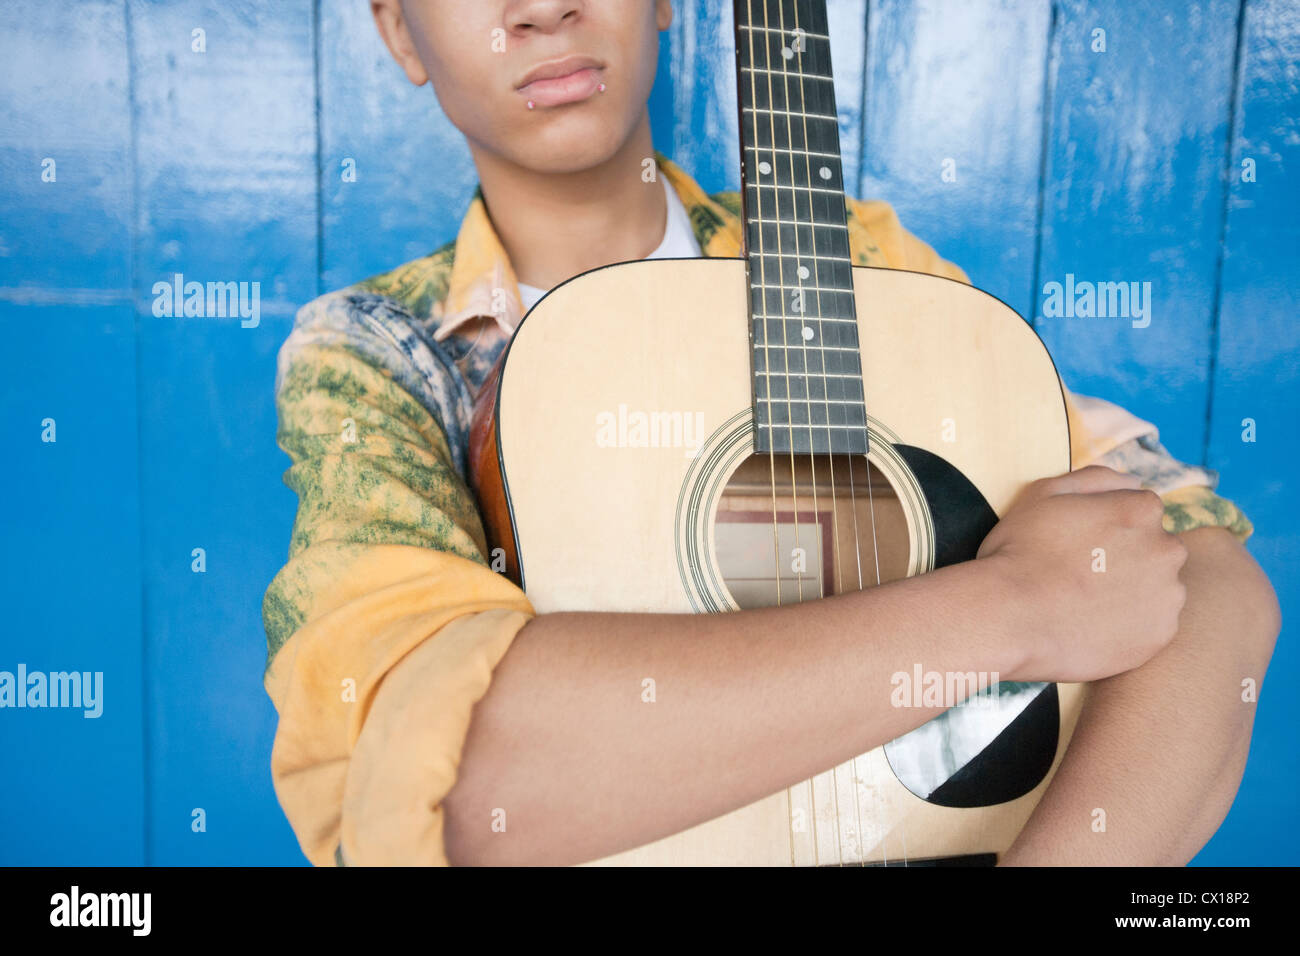 La sezione centrale di un ragazzo adolescente con la chitarra contro la boiserie in legno Foto Stock